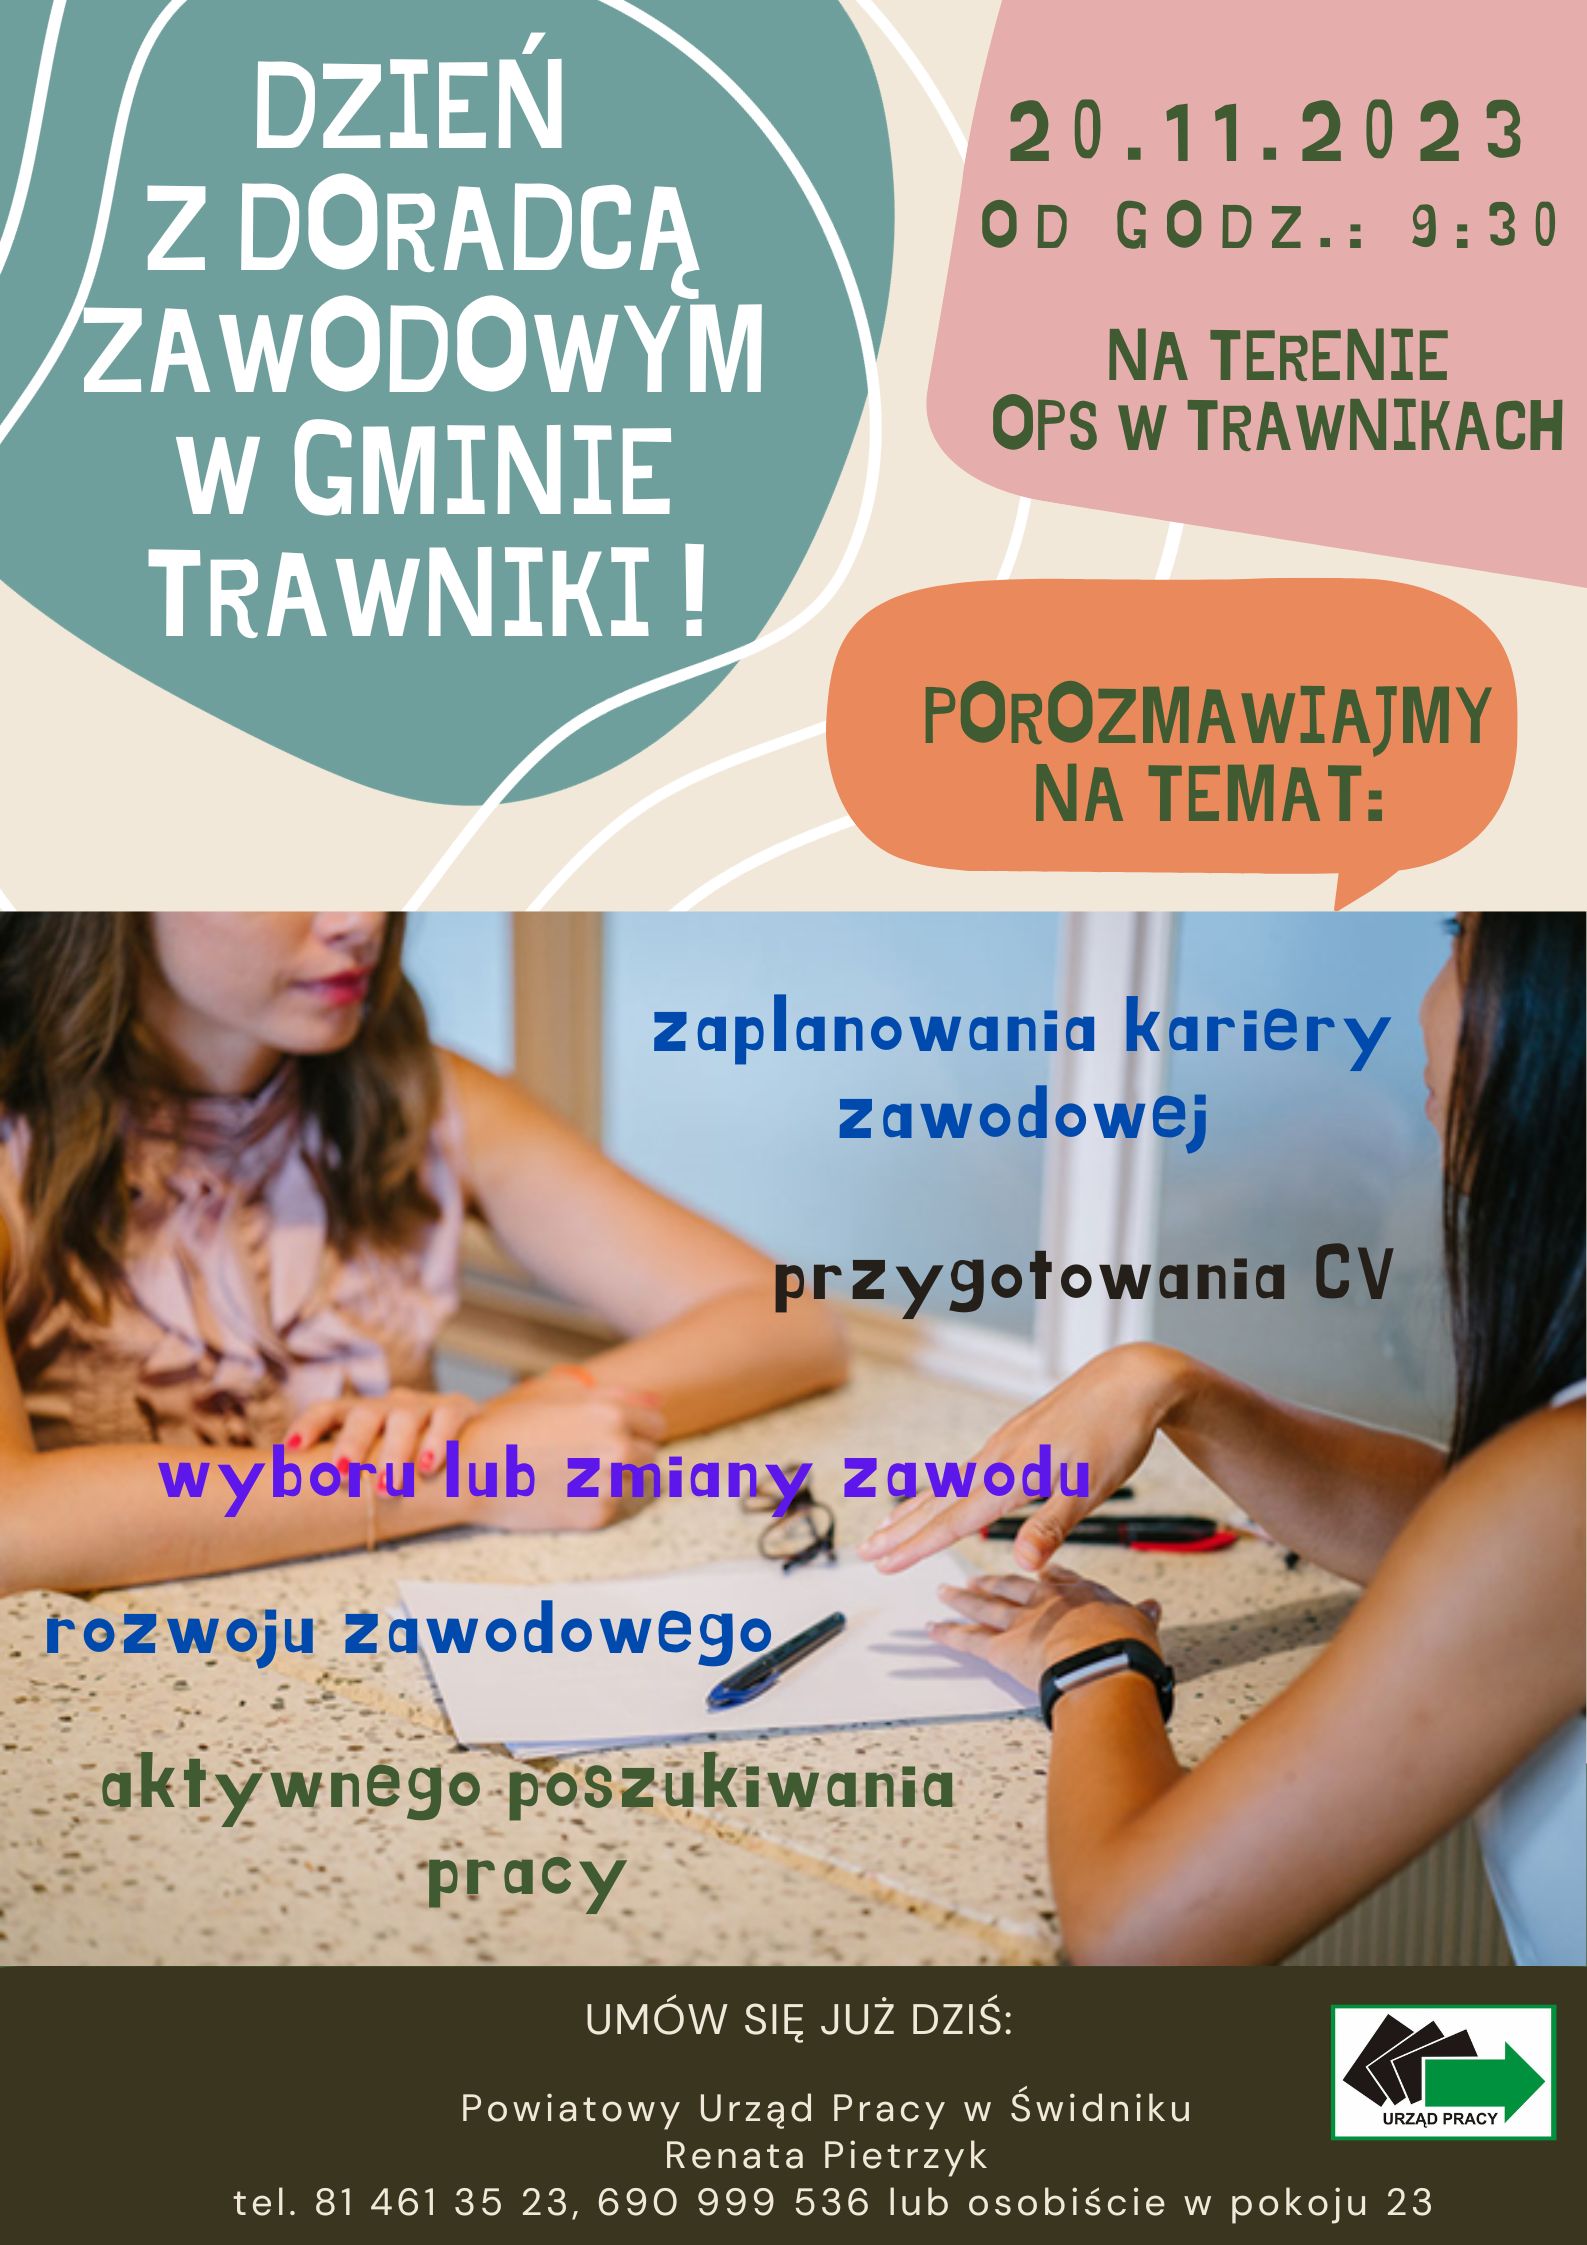 Plakat wydarzenia - Dzień z doradcą zawodowym w gminie Trawniki 20.11.2023